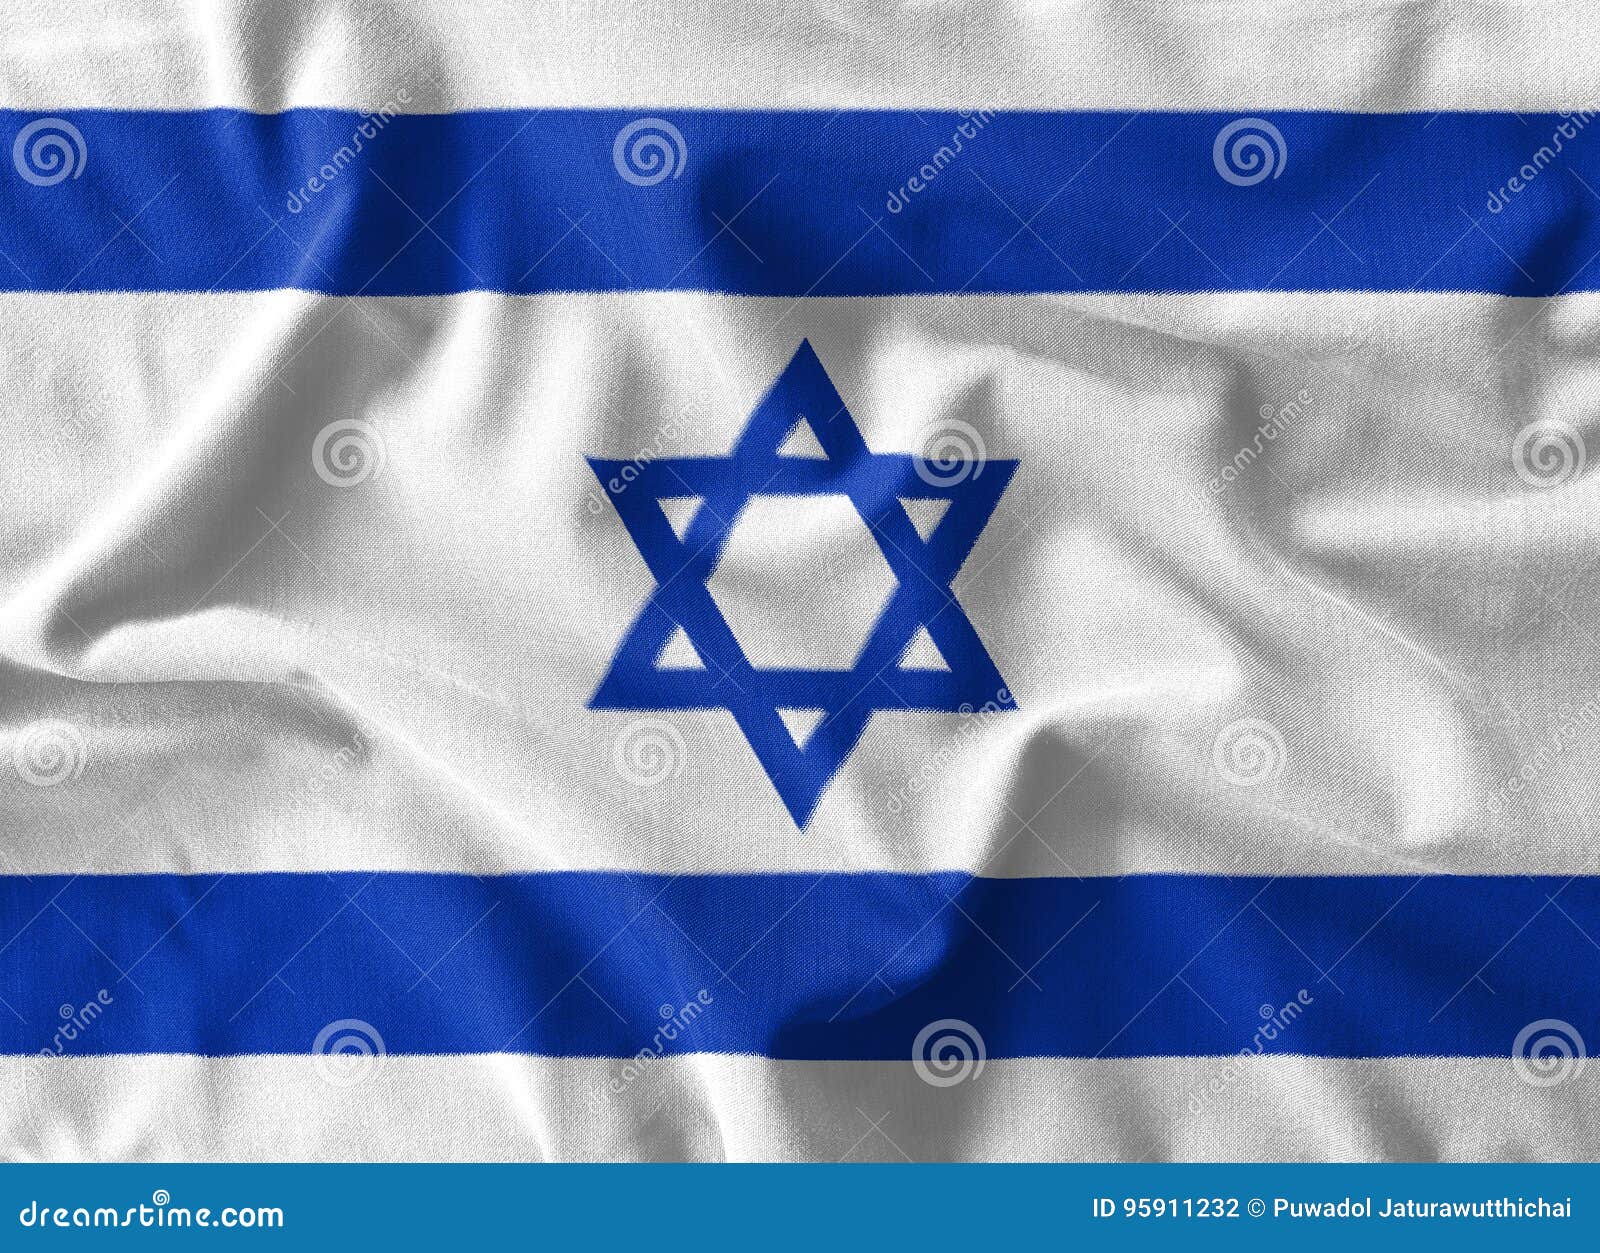 Pintura De La Bandera De Israel Sobre El Alto Las De Algodón De La Onda Stock de ilustración - Ilustración de doblez, jerusalén: 95911232